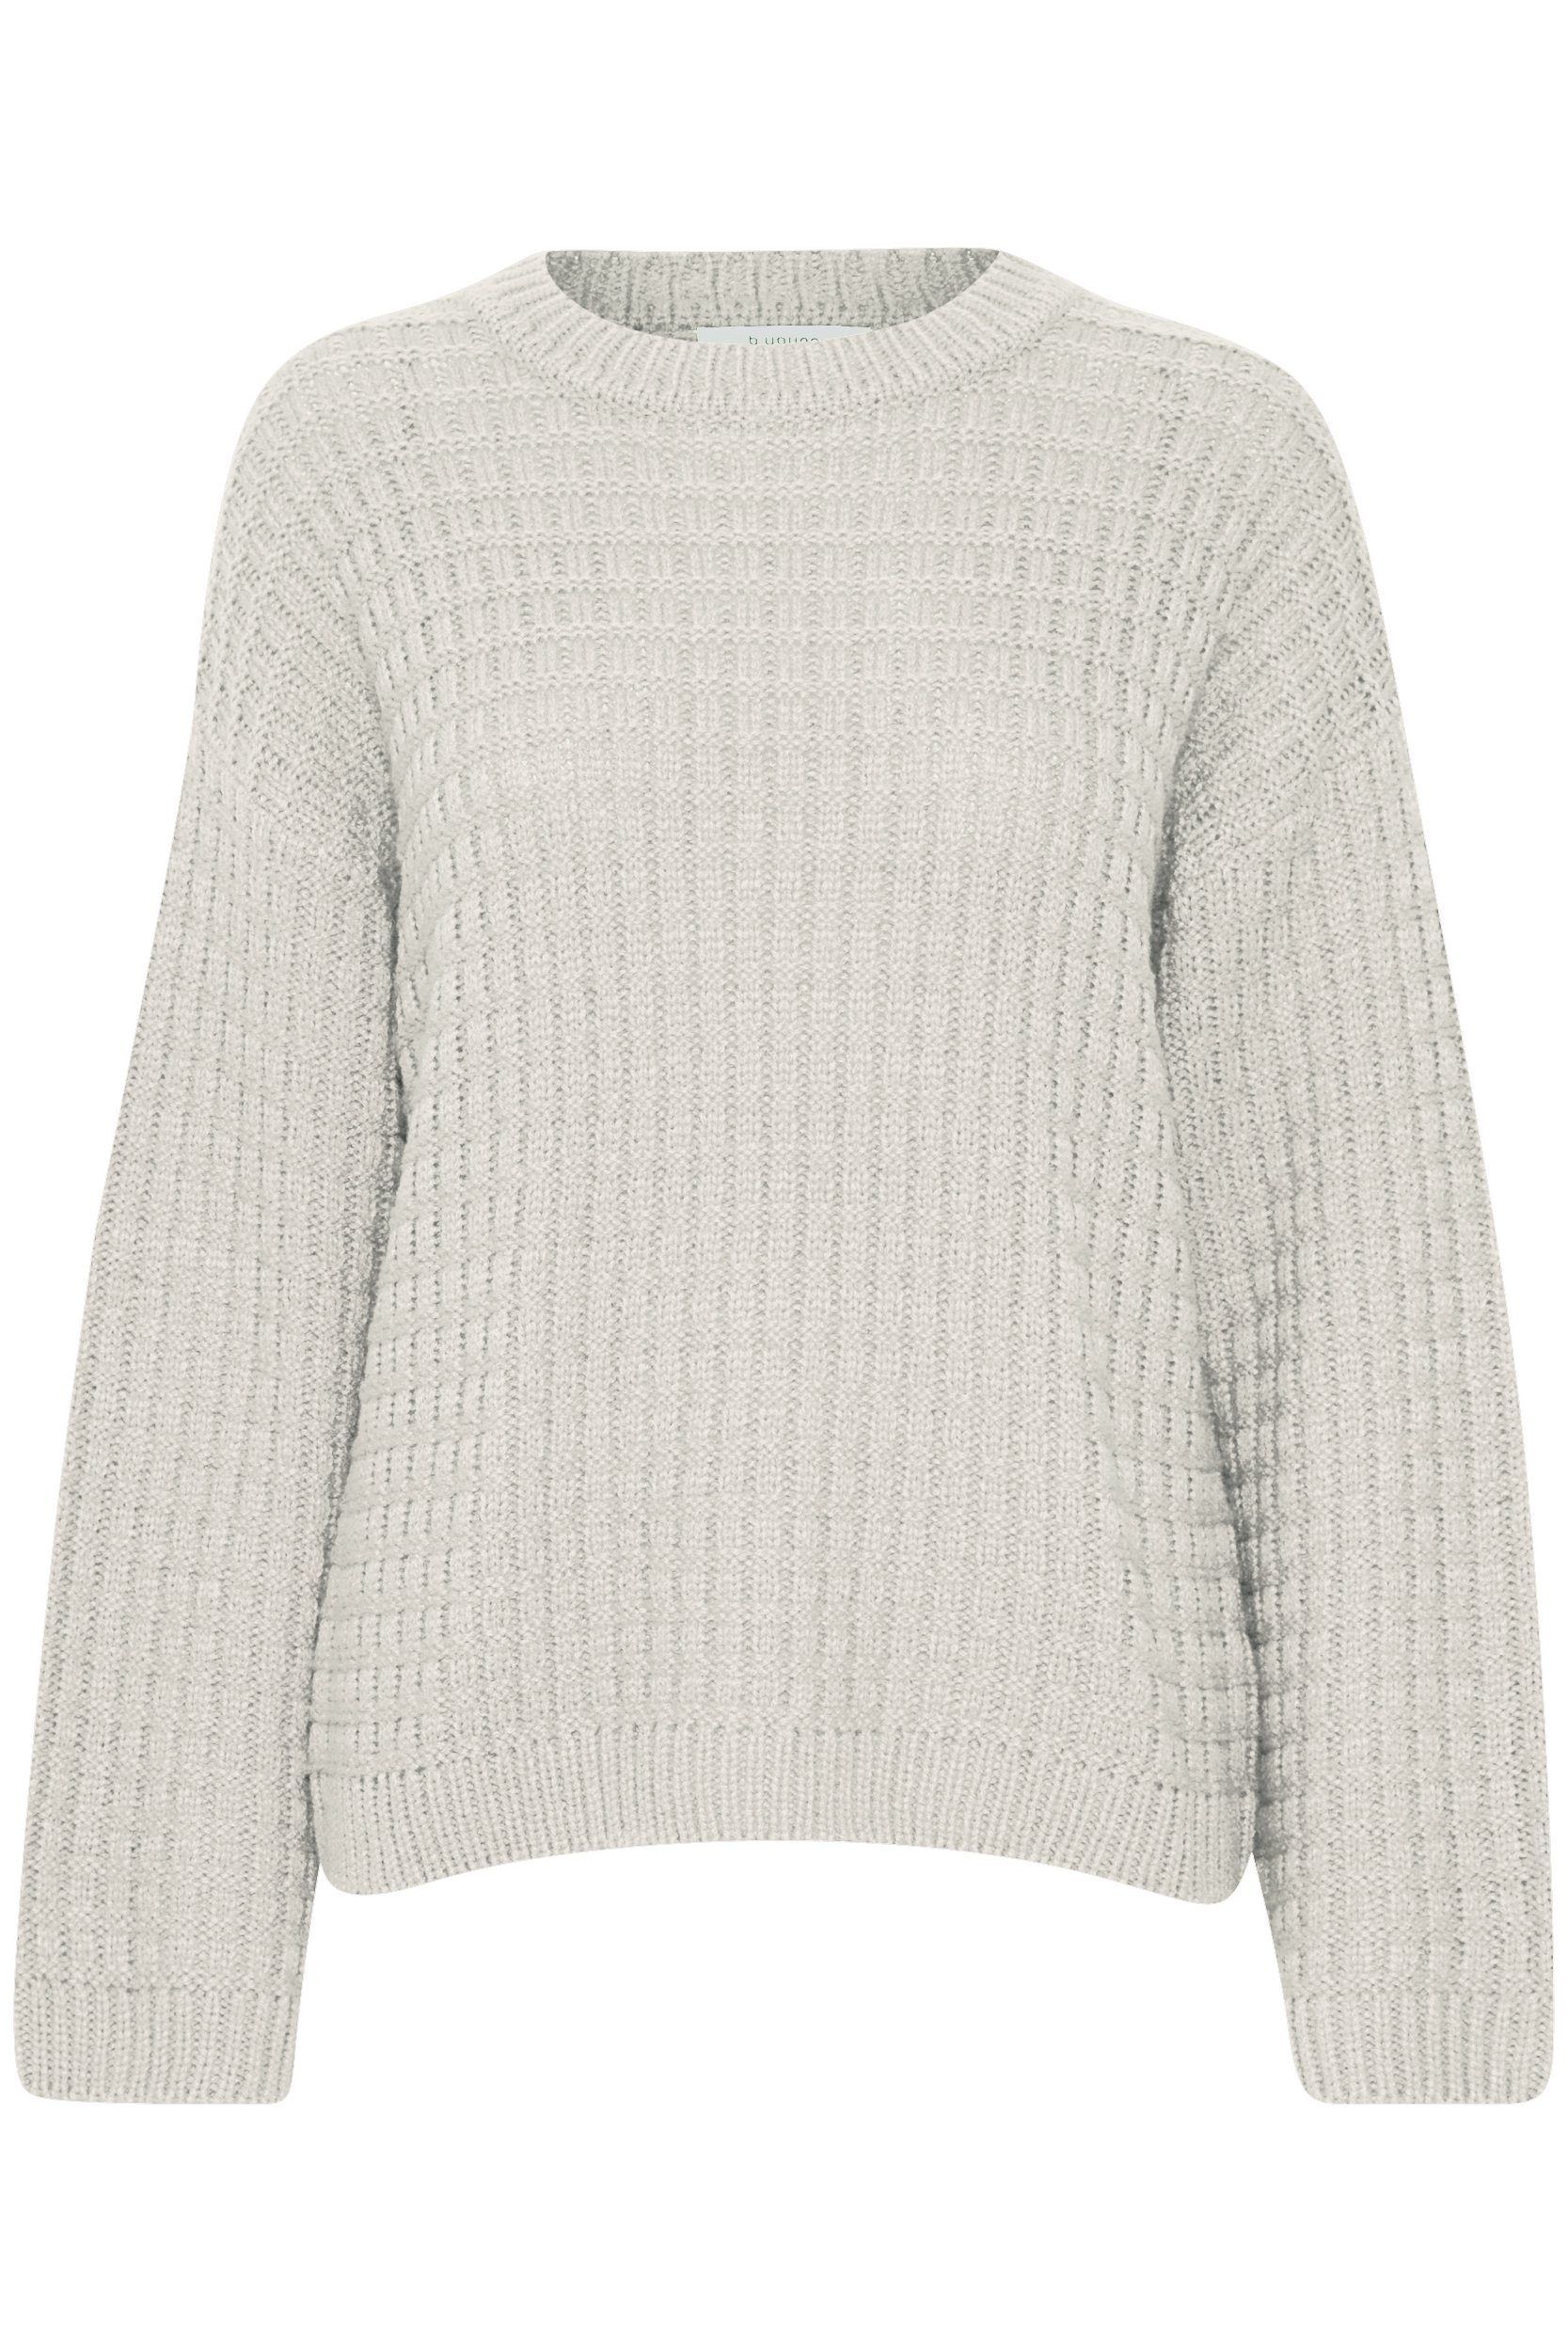 b.young Strickpullover Grobstrick Pullover Sweater mit Abgesetzten Schultern 6664 in Weiß